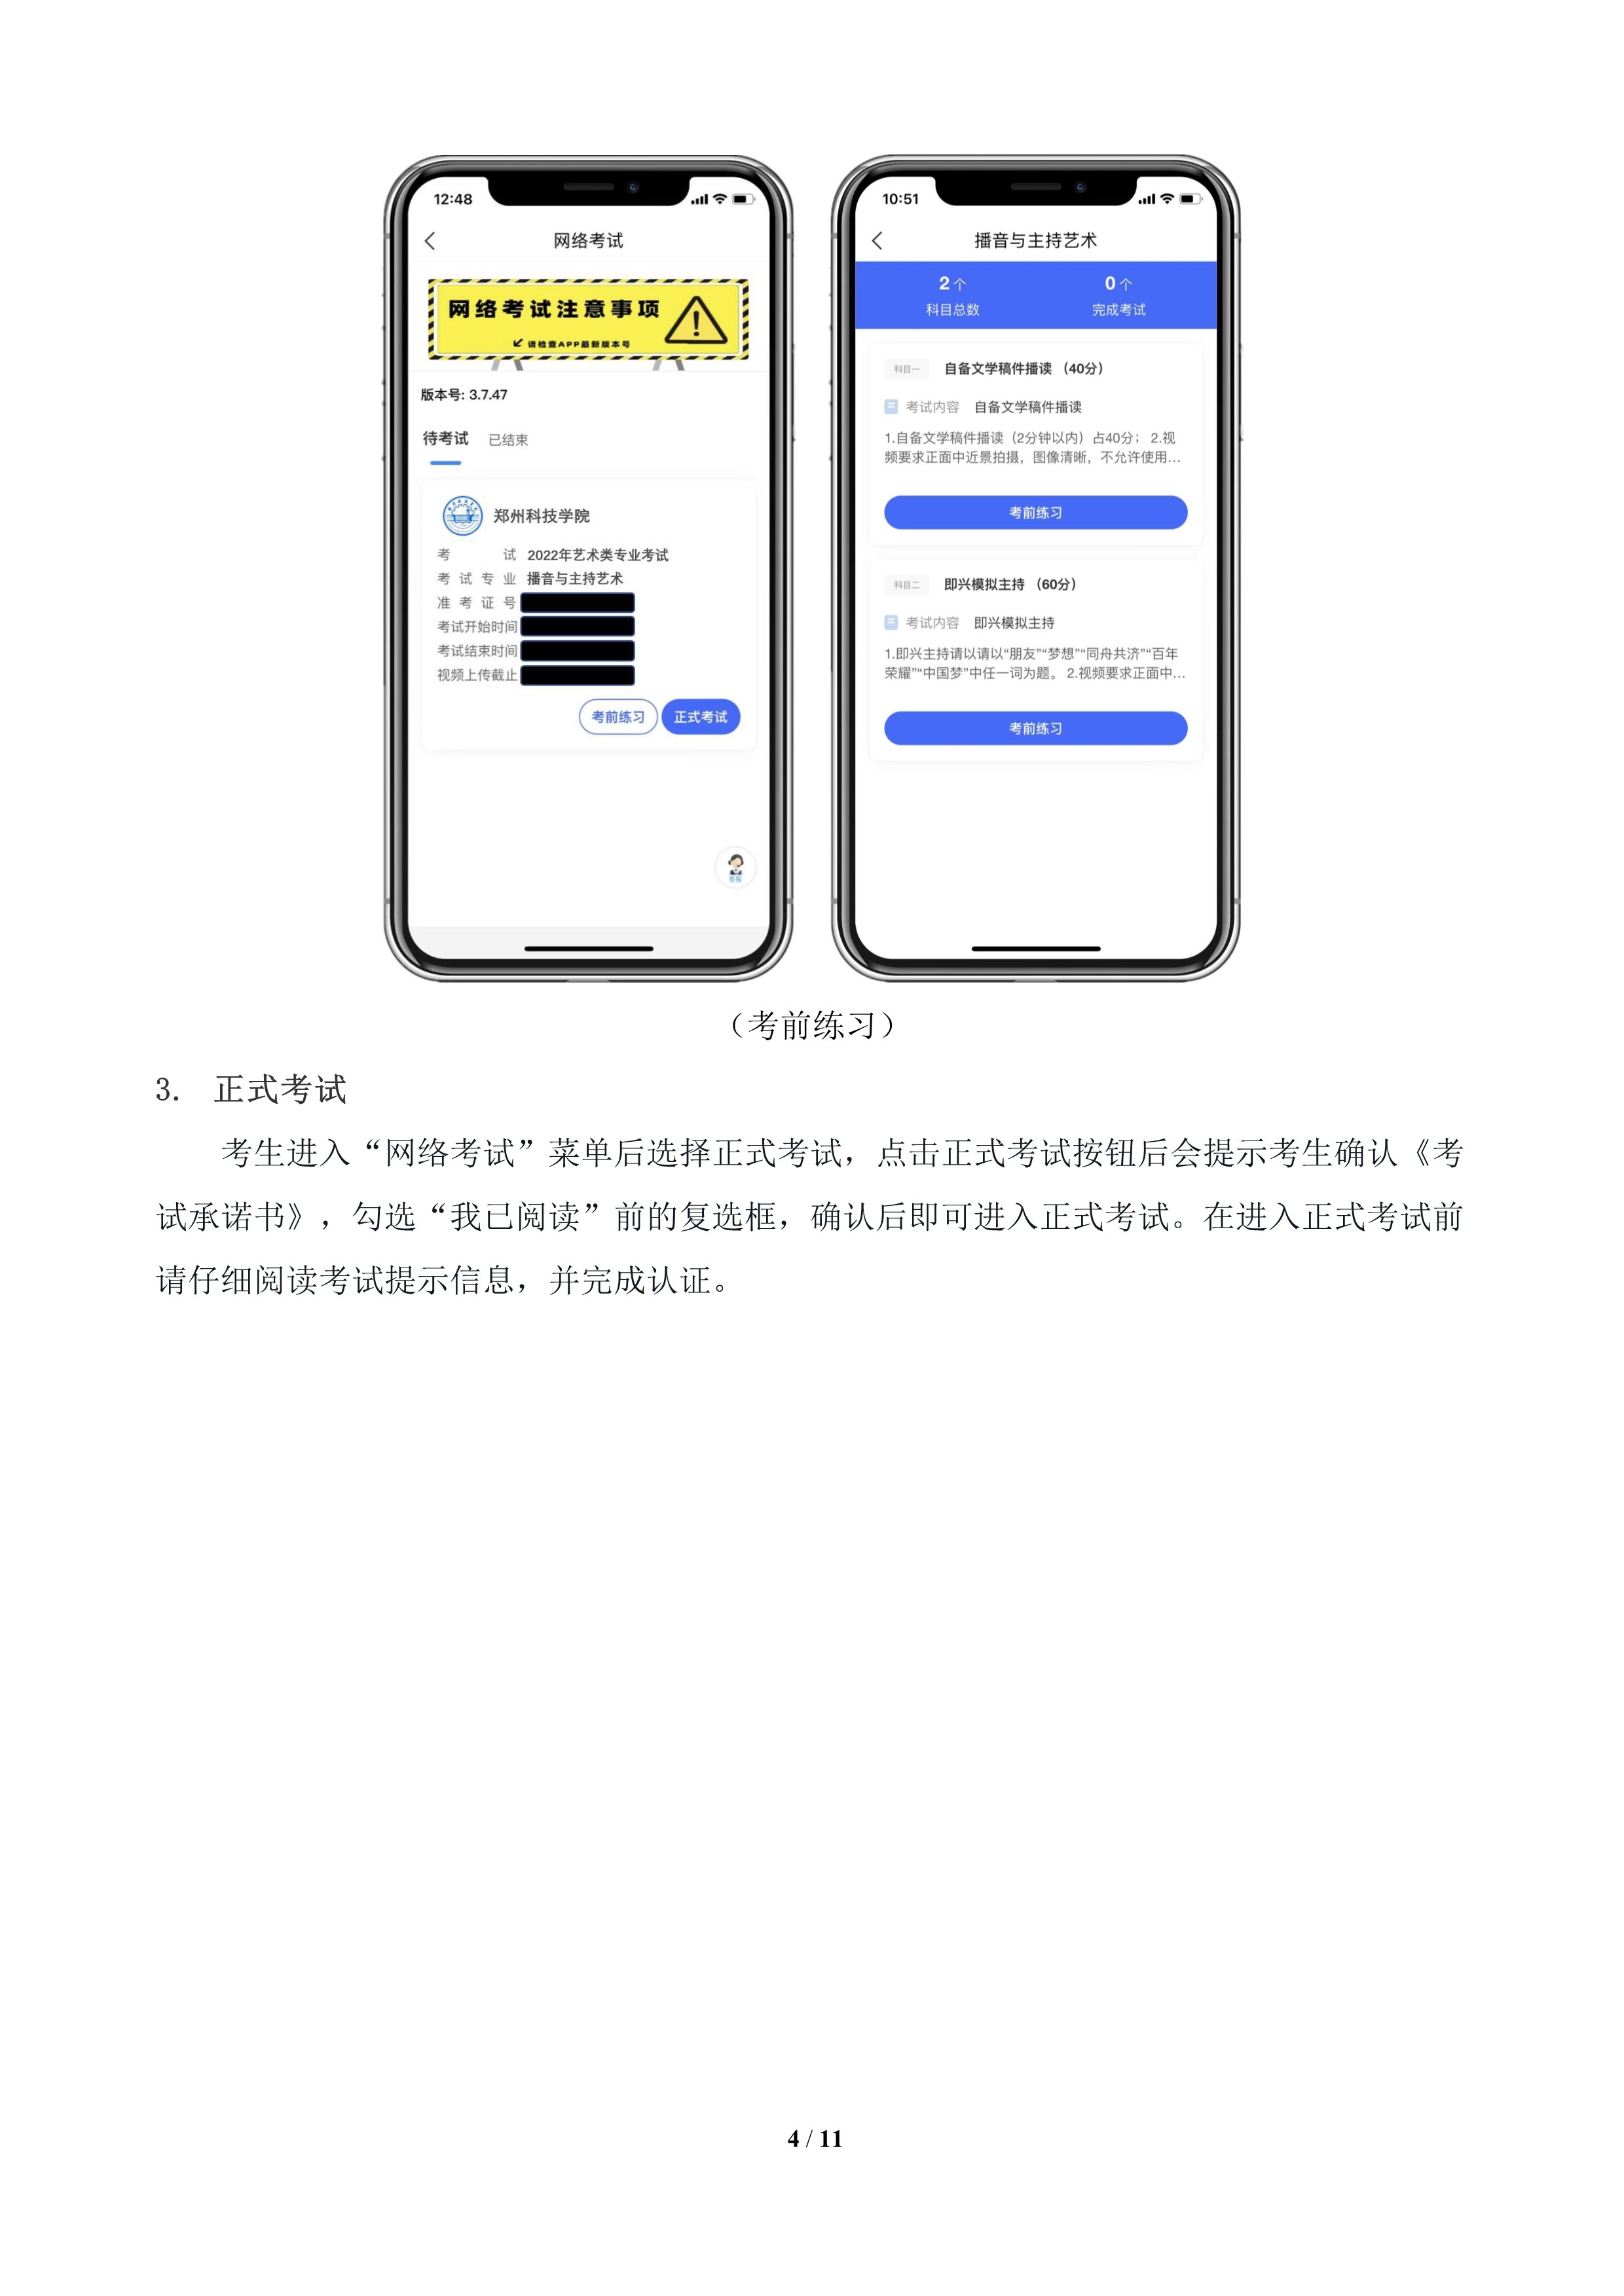 郑州科技学院2022年网络考试专业操作说明（通用版）_4.jpg